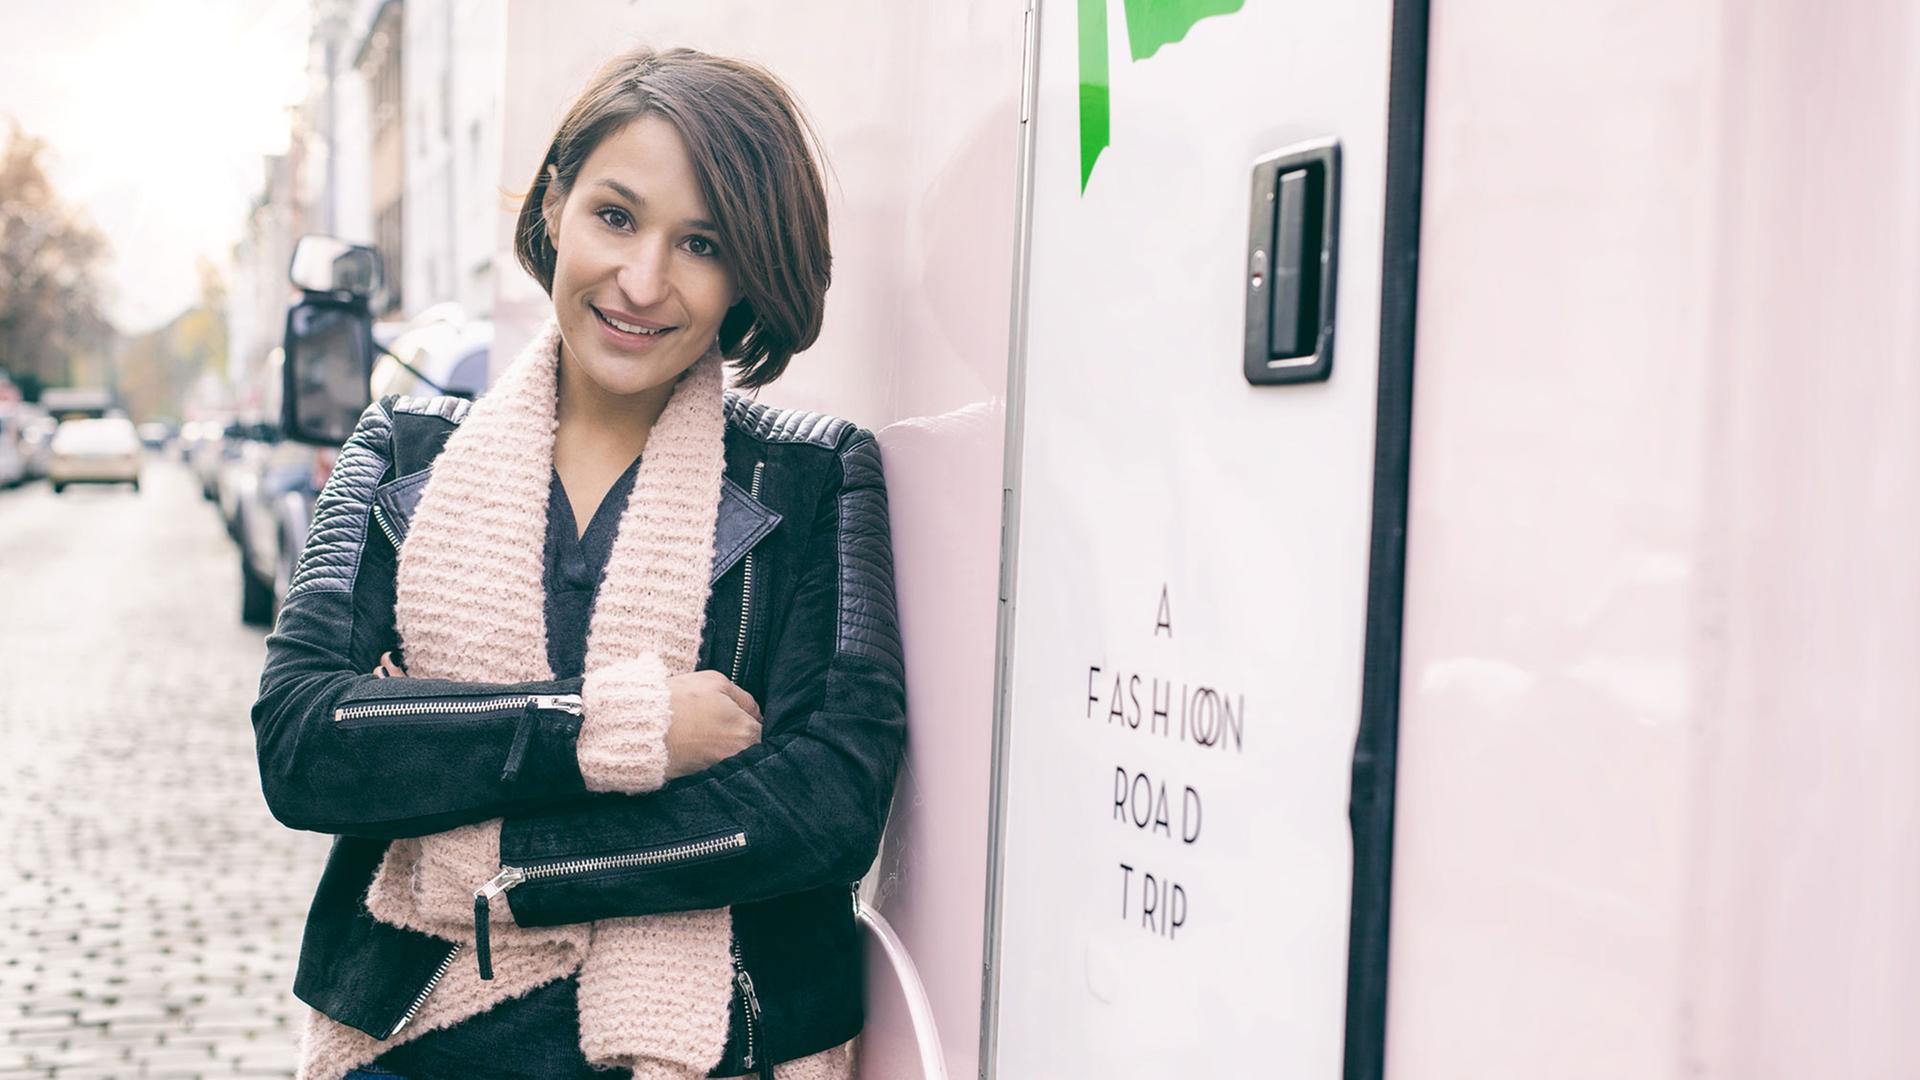 Truck-á-Porter-Gründerin Daniela Bode vor ihrer rosafarbenen Mini-Boutique auf Rädern